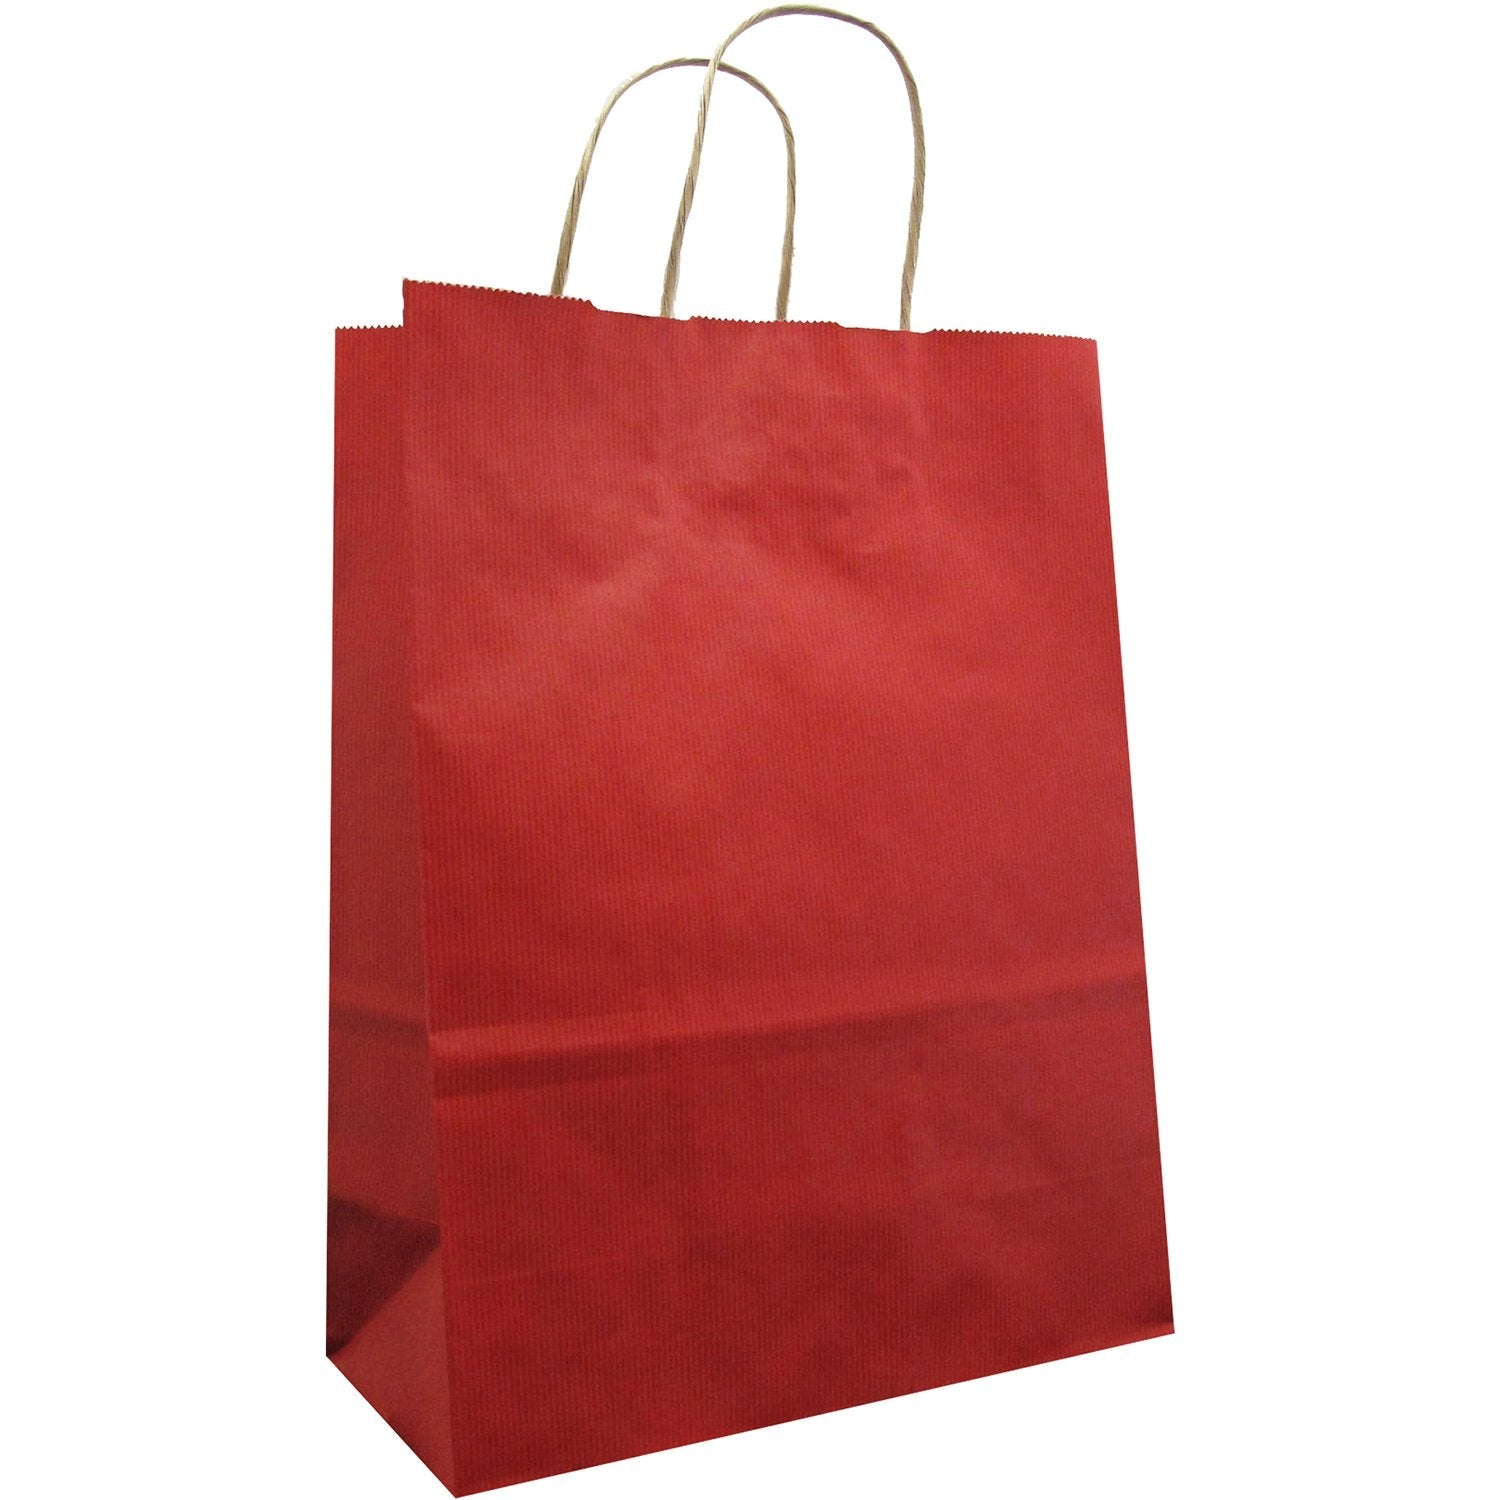 Jillson & Roberts Large Kraft Bags, Red